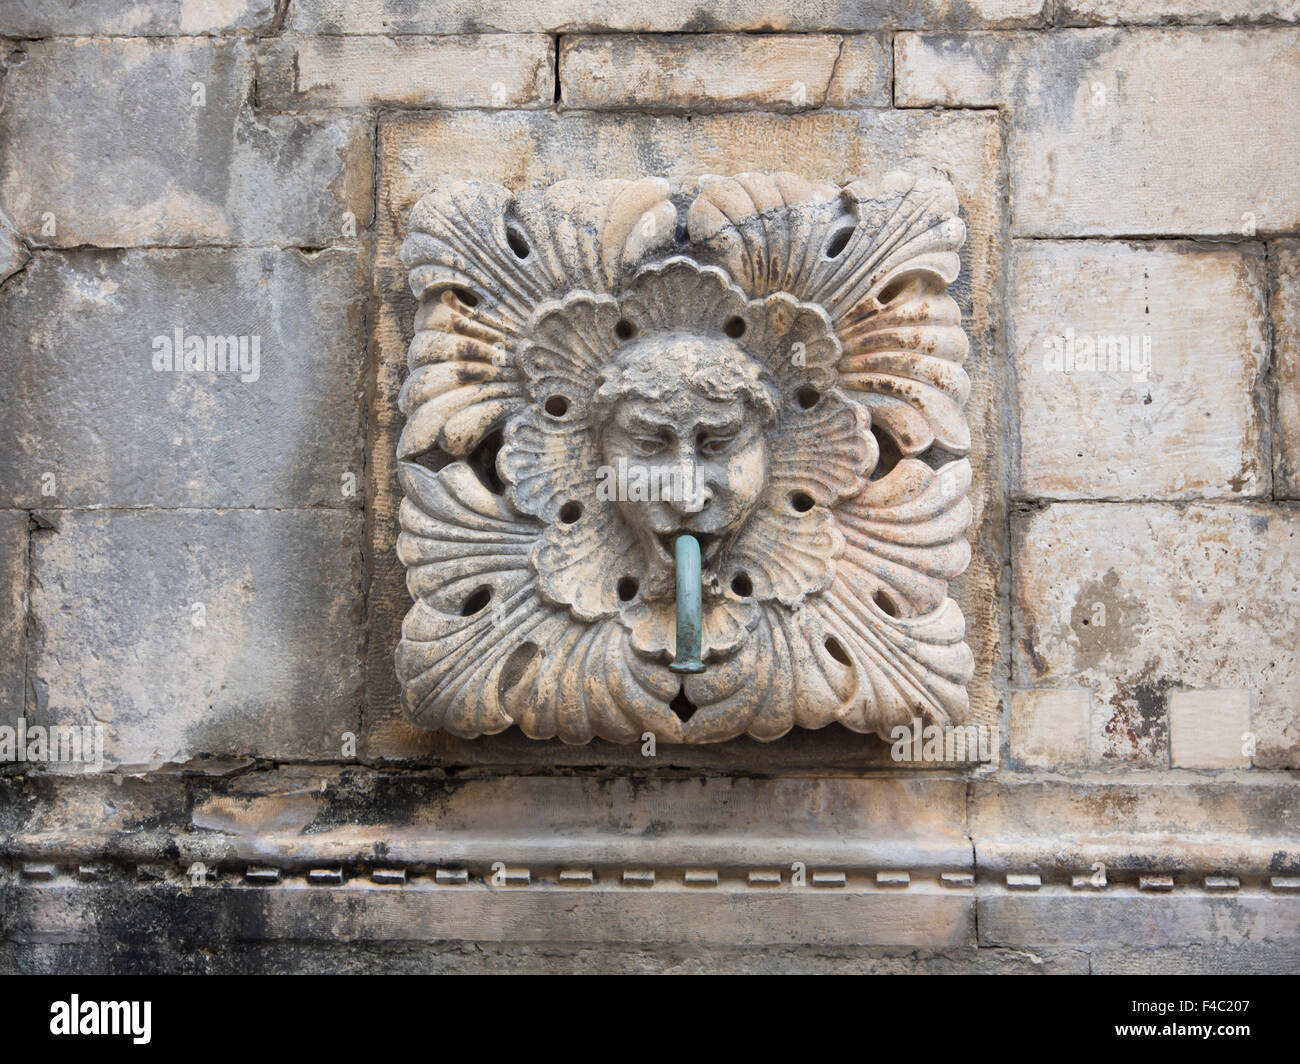 Détail de sculptures sur pierre sur la grande fontaine d'Onofrio sur le Stradun ou Placa rue de la vieille ville de Dubrovnik, Croatie Banque D'Images